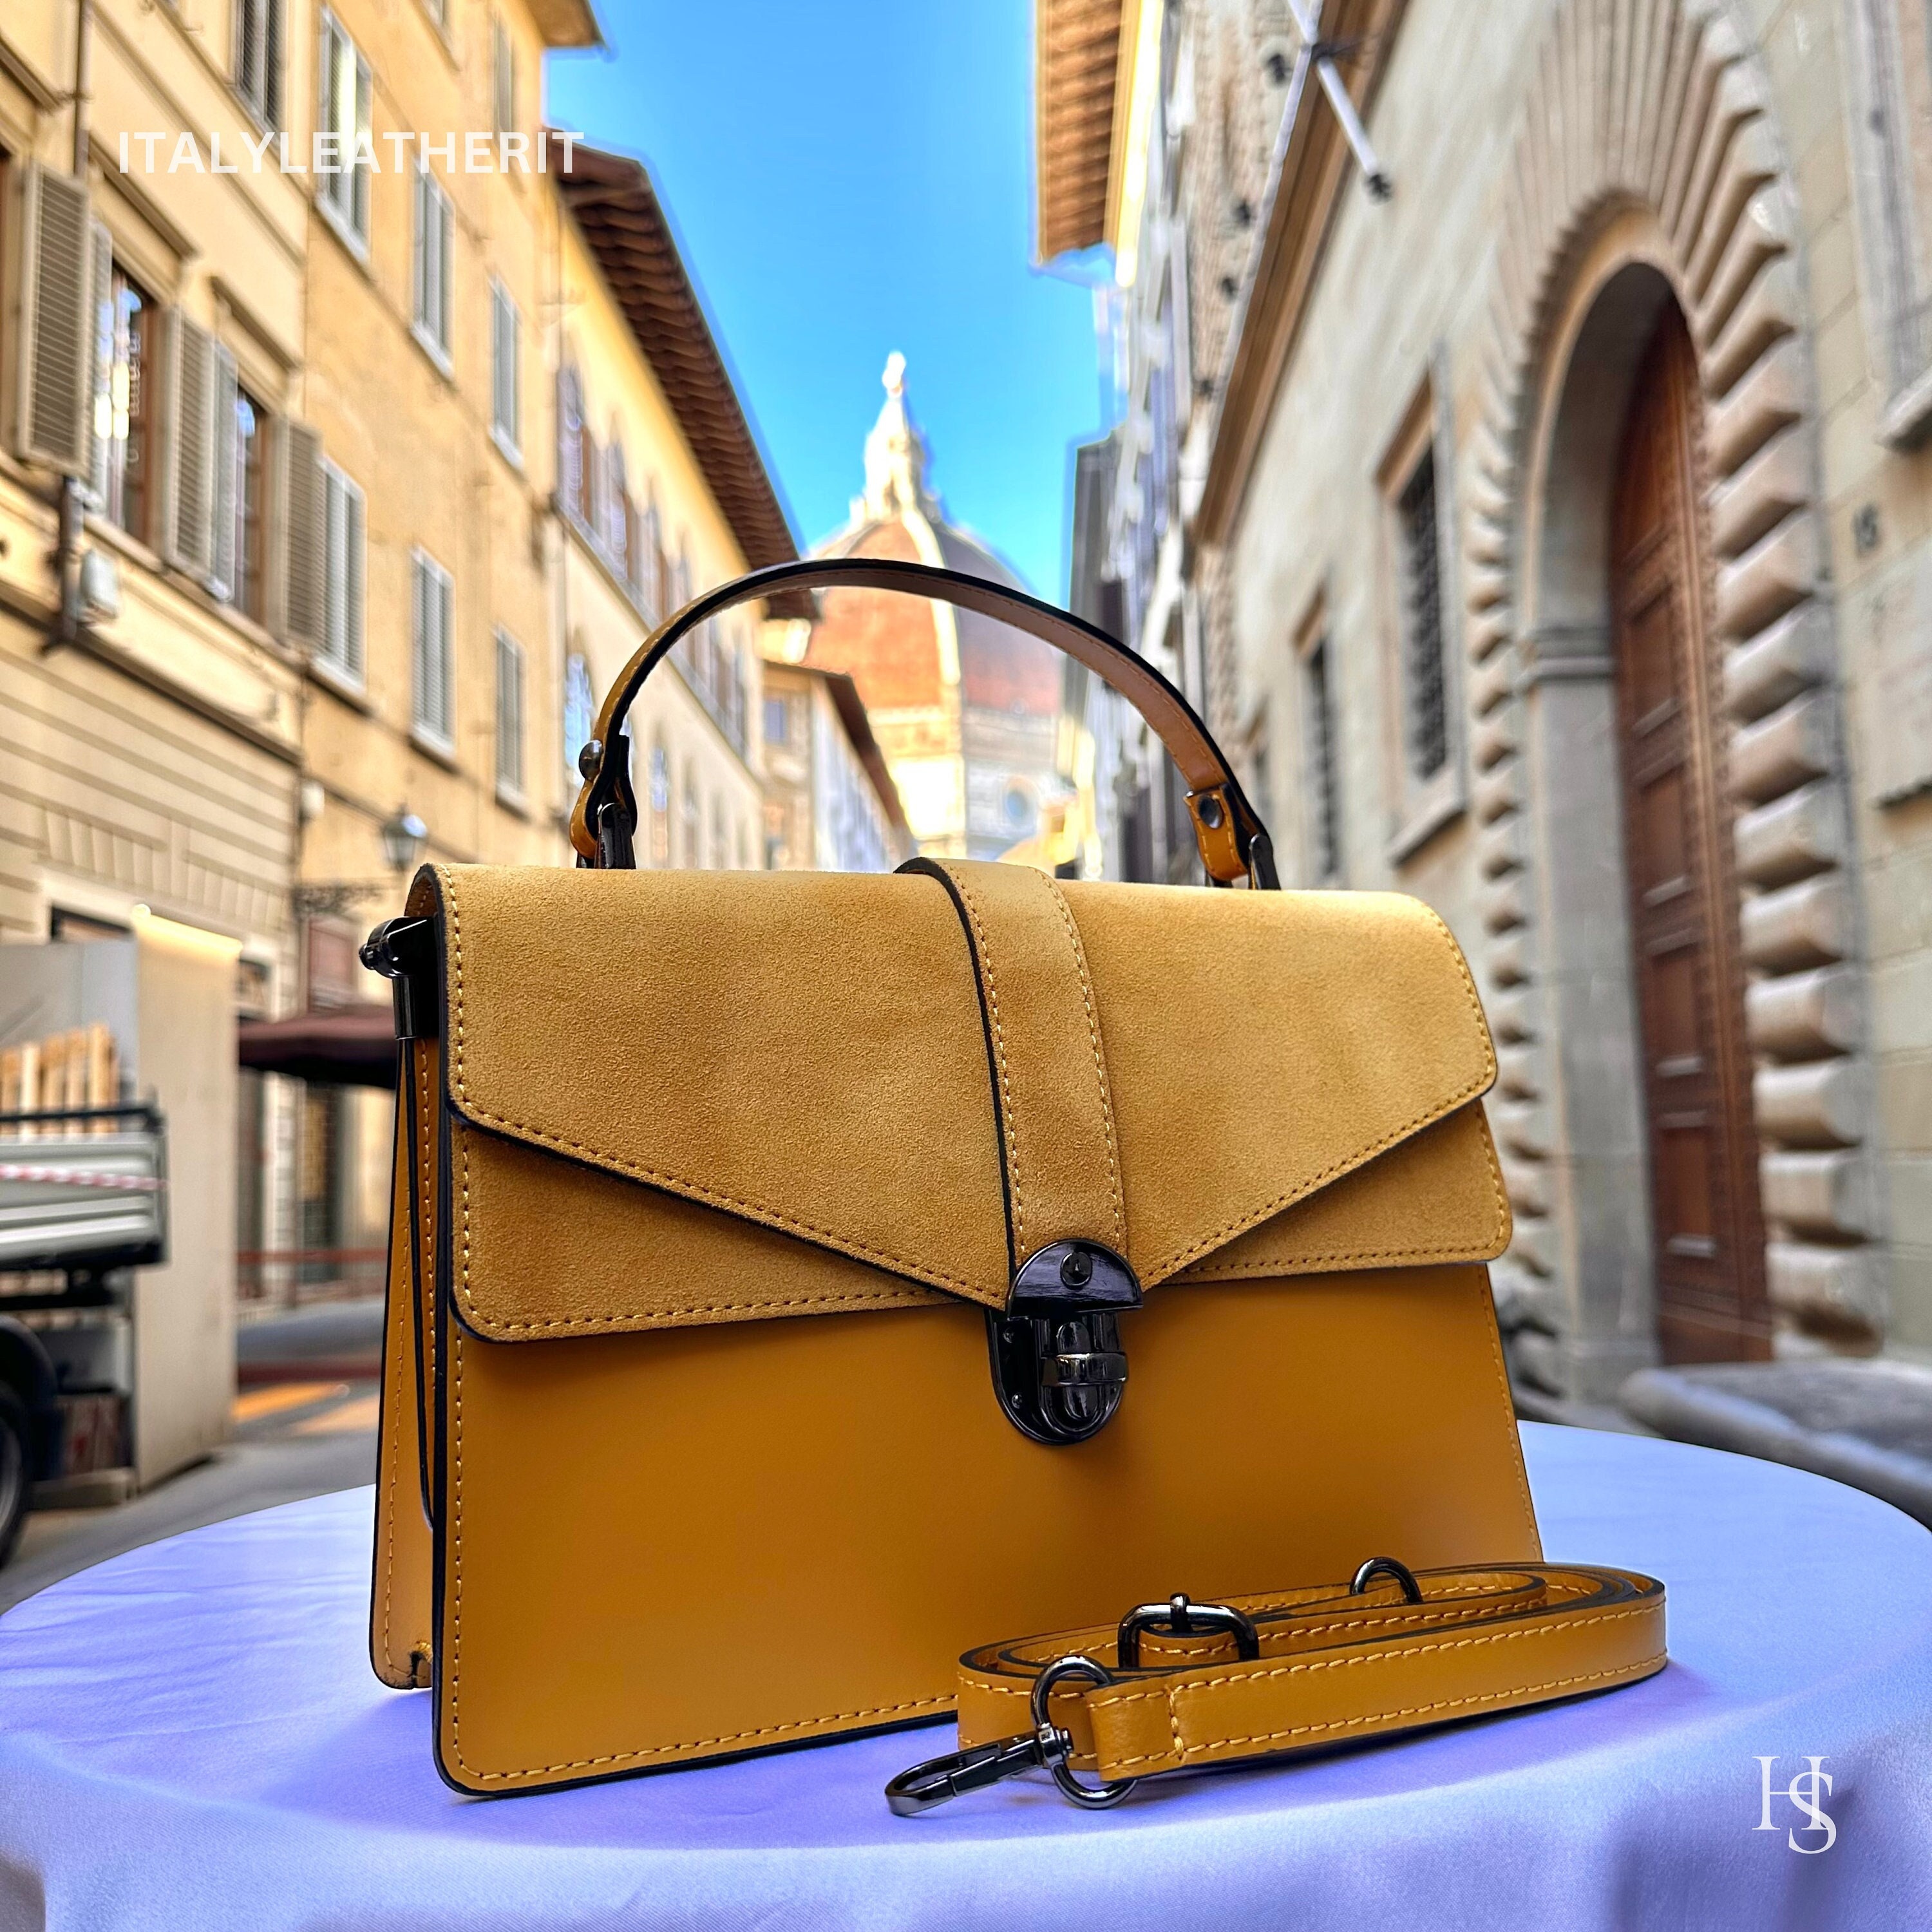 Woven leather bag. Luxury bag handmade in Italy. Bucket Bag - Nude